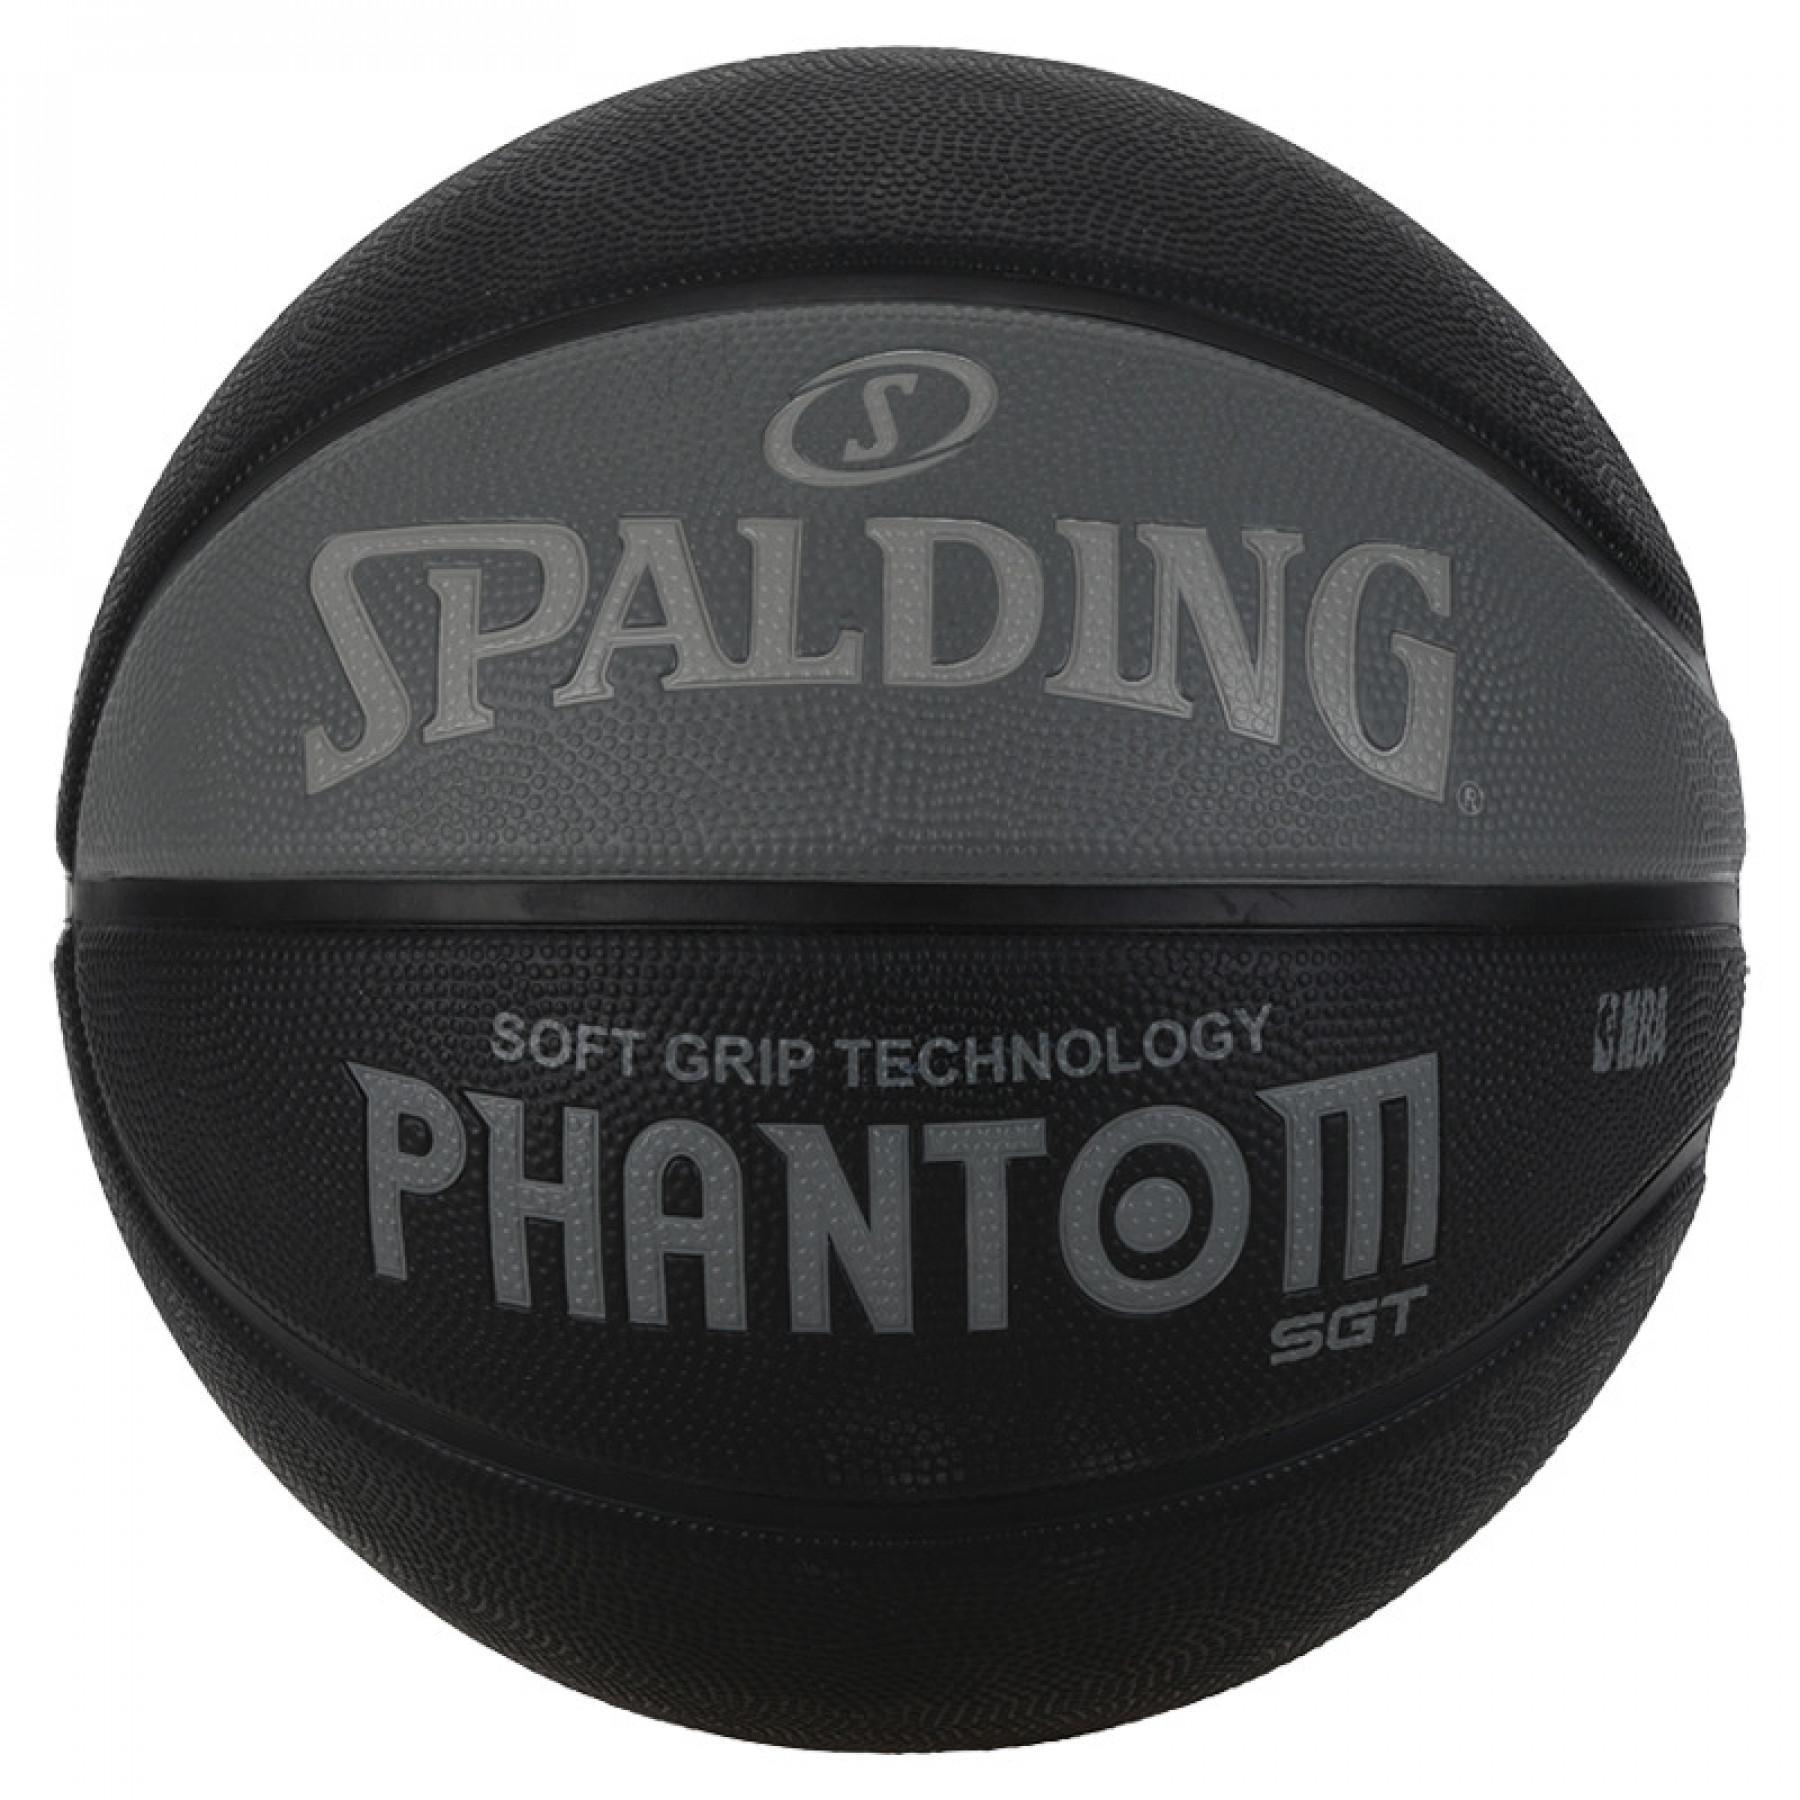 Globo Spalding NBA Phantom Street (83-954z)